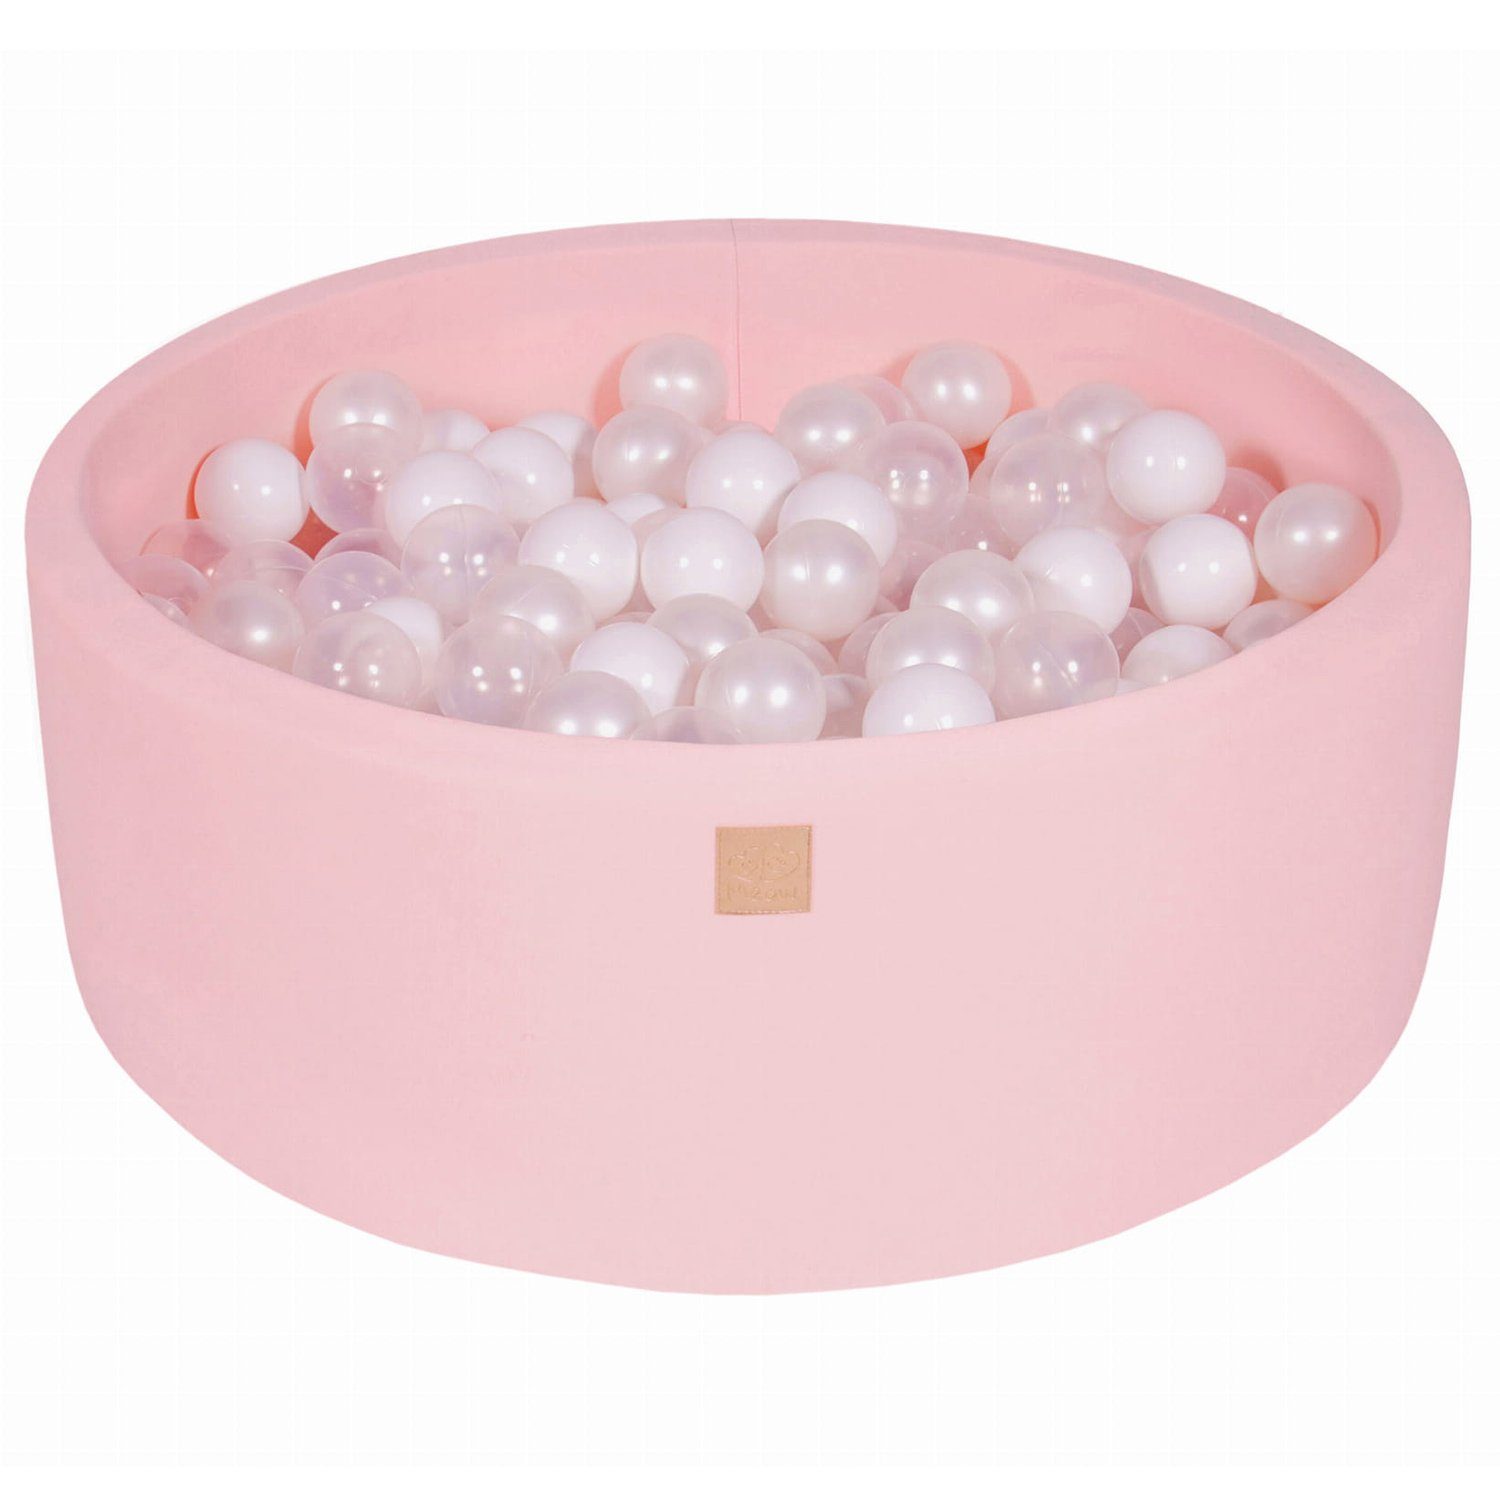 MeowBaby Bällebad Bällebad für Kinder und Babys - Cotton Light Pink - Bällchenbad, (Bällebad mit 200 Bällen), Rundes Kugelbad 90x30cm mit 200 Bunten Bällen, waschbarer Bezug